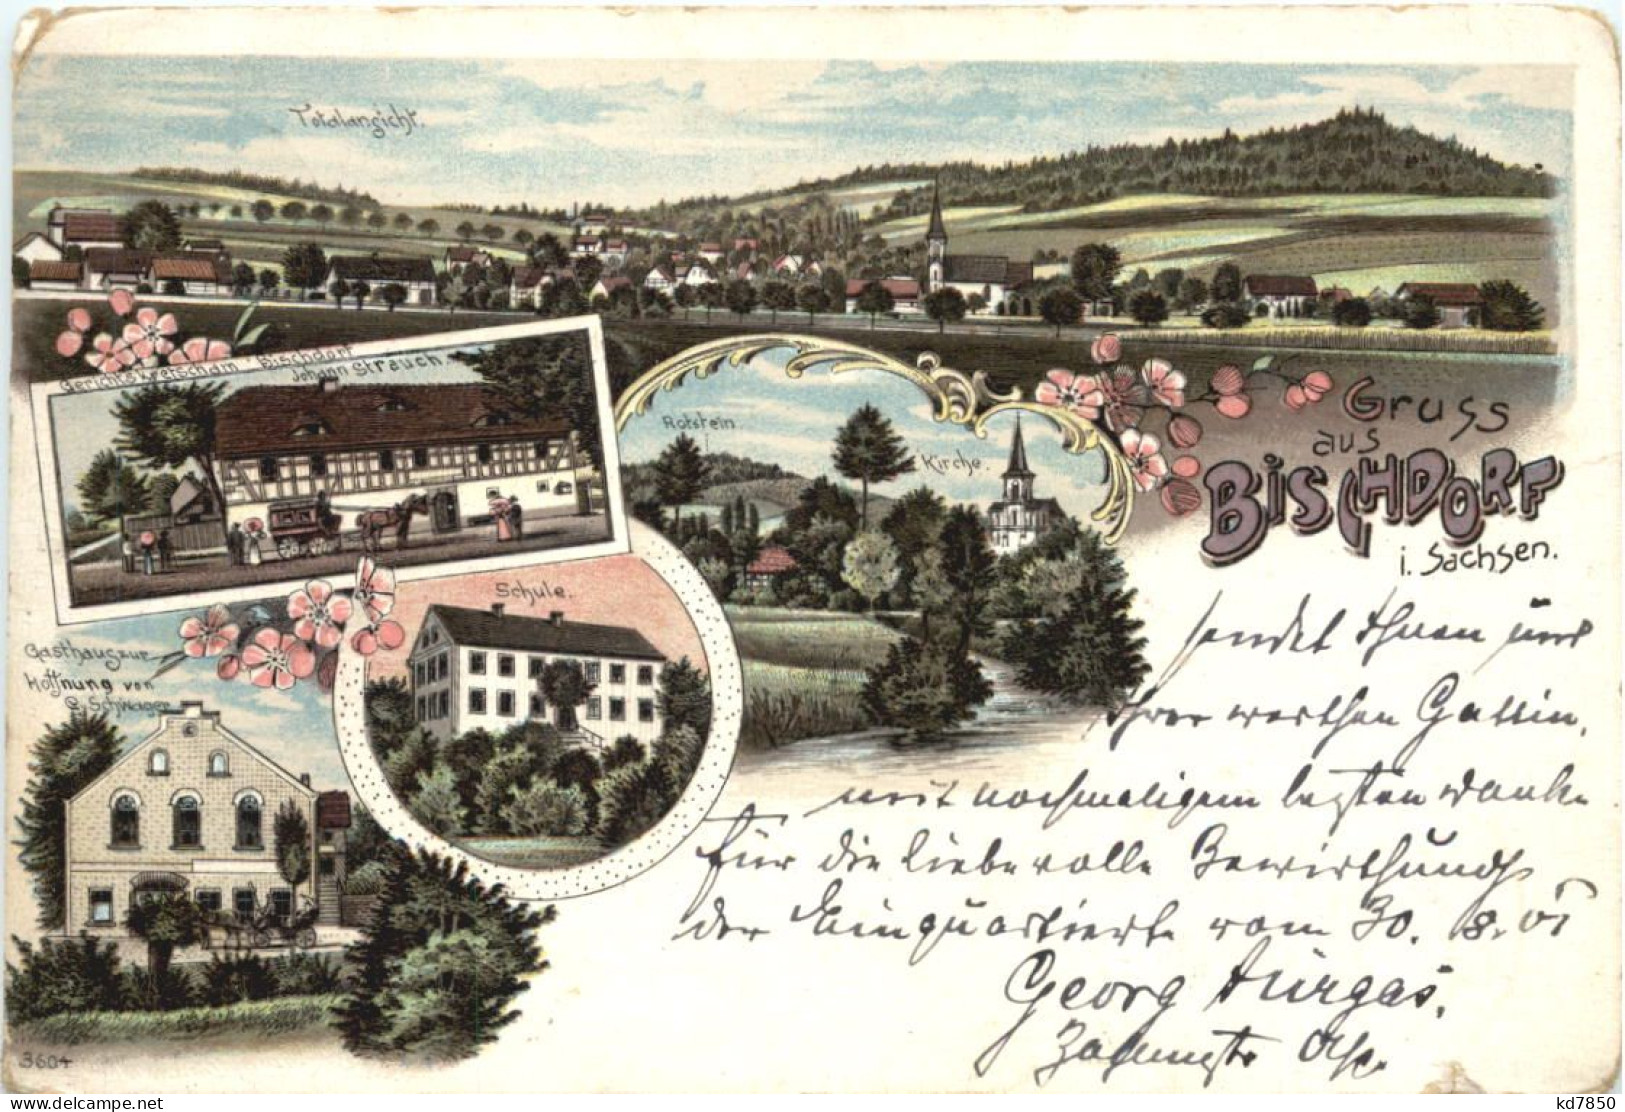 Gruß Aus Bischdorf In Sachsen - Litho - Goerlitz